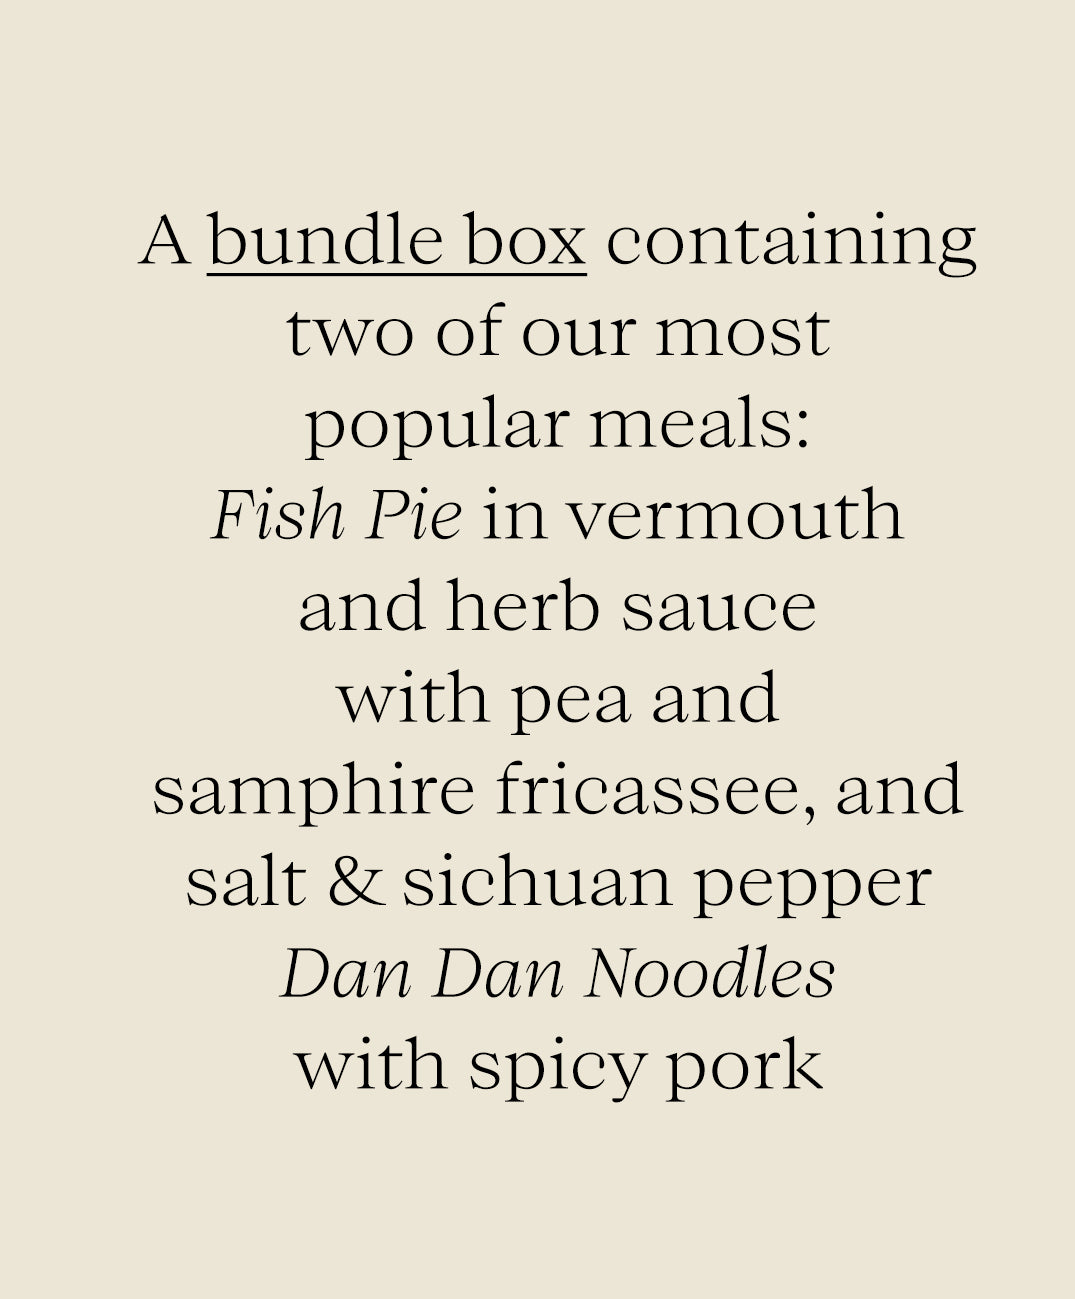 2 Meal Bundle Box - Fish Pie and Dan Dan Noodles